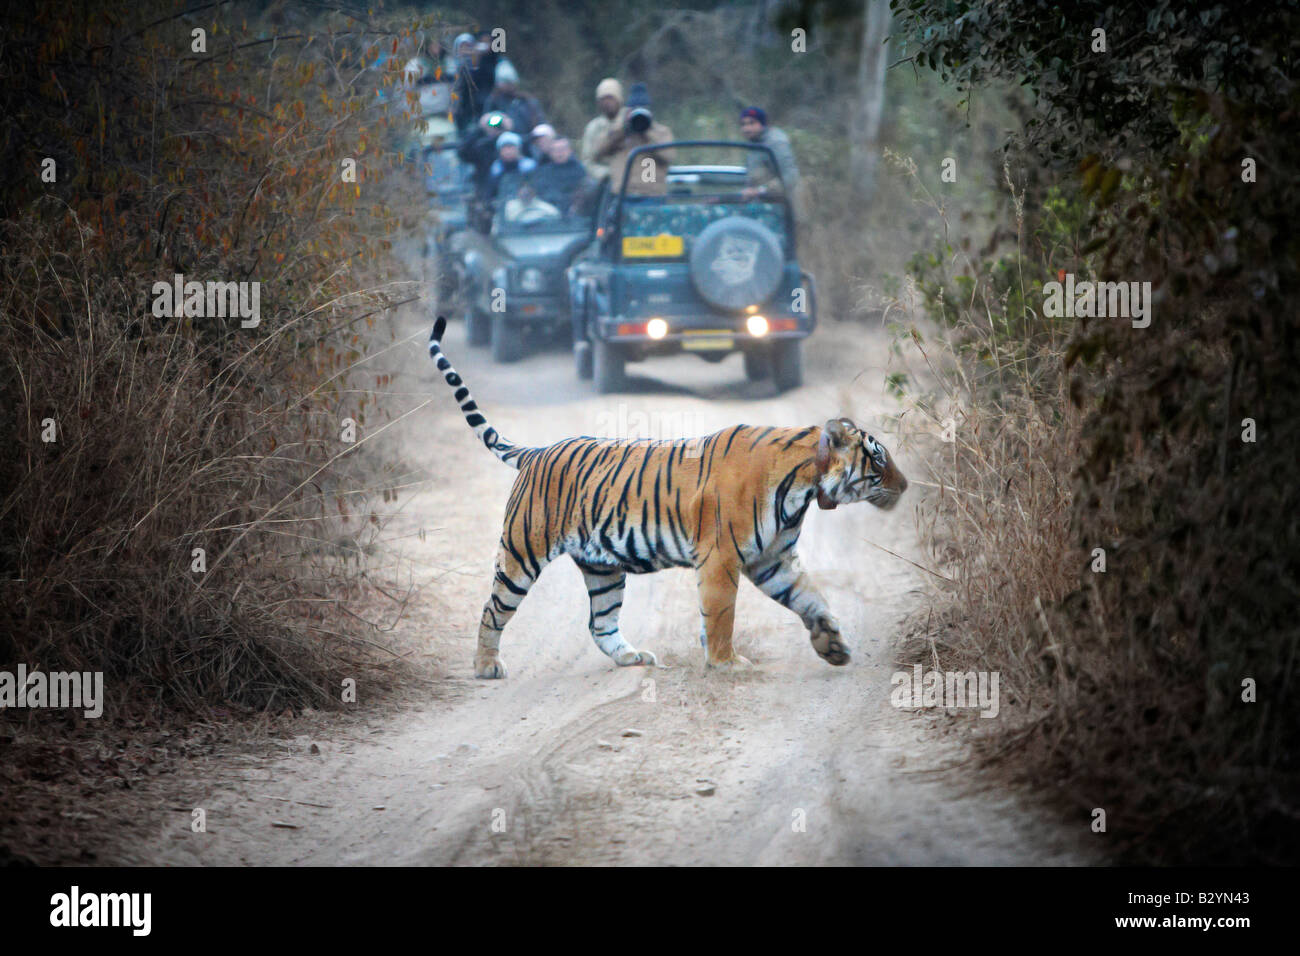 Ein wilder Tiger kreuzt die unbefestigte Straße mit Touristen in Fahrzeugen, die im Hintergrund beobachten. Stockfoto